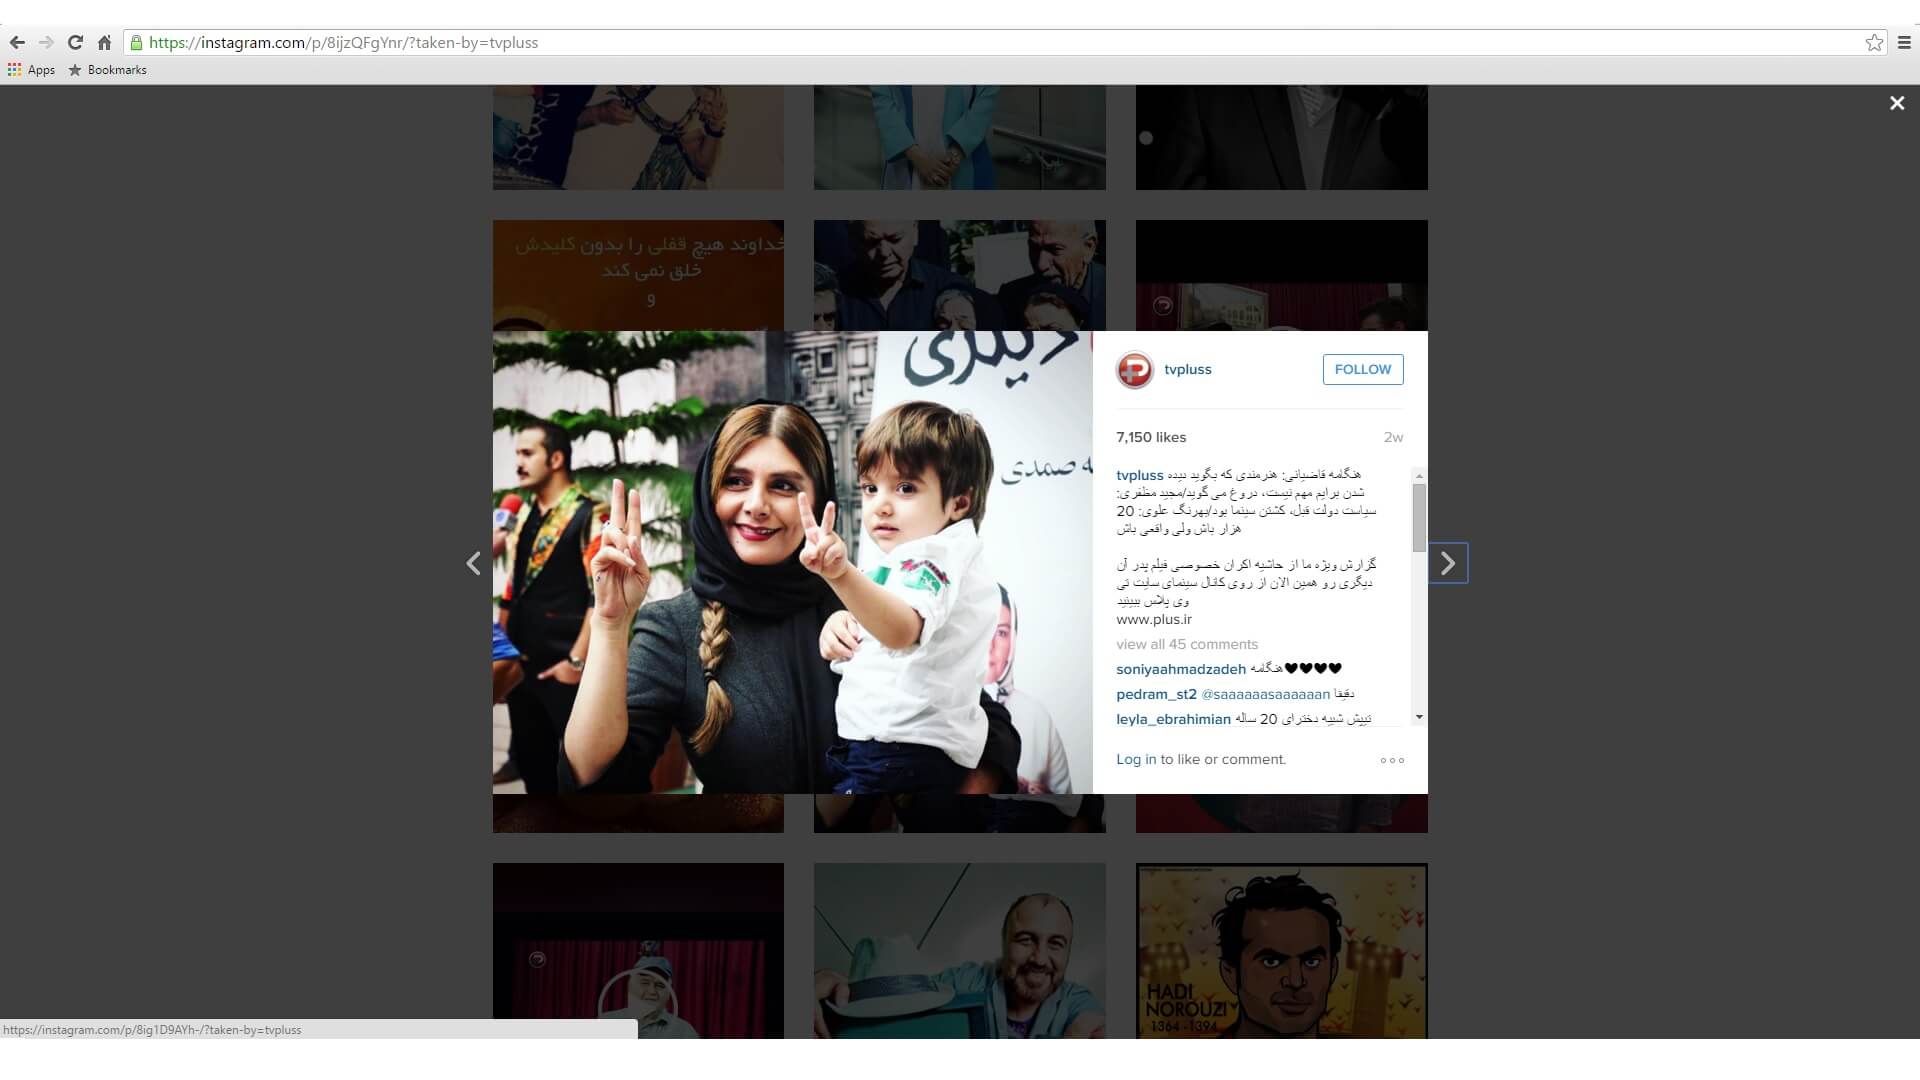 صفحه رسمی تی وی پلاس در اینستاگرام صهیونیستی